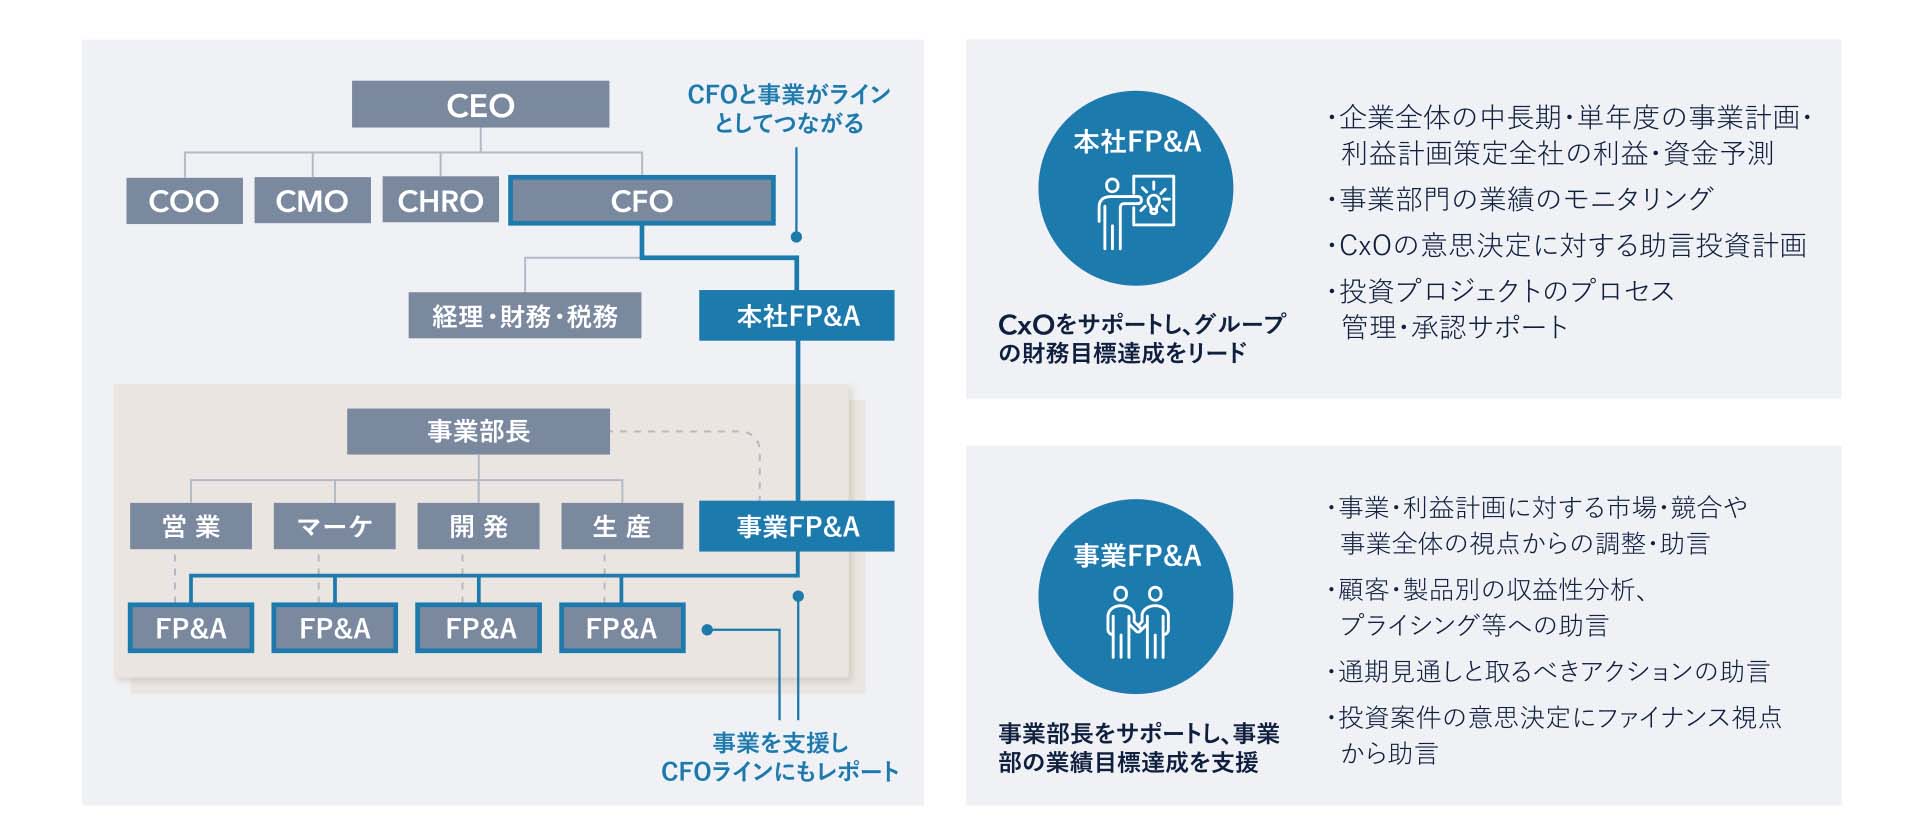 図3：本社FP&Aと事業FP&Aの役割